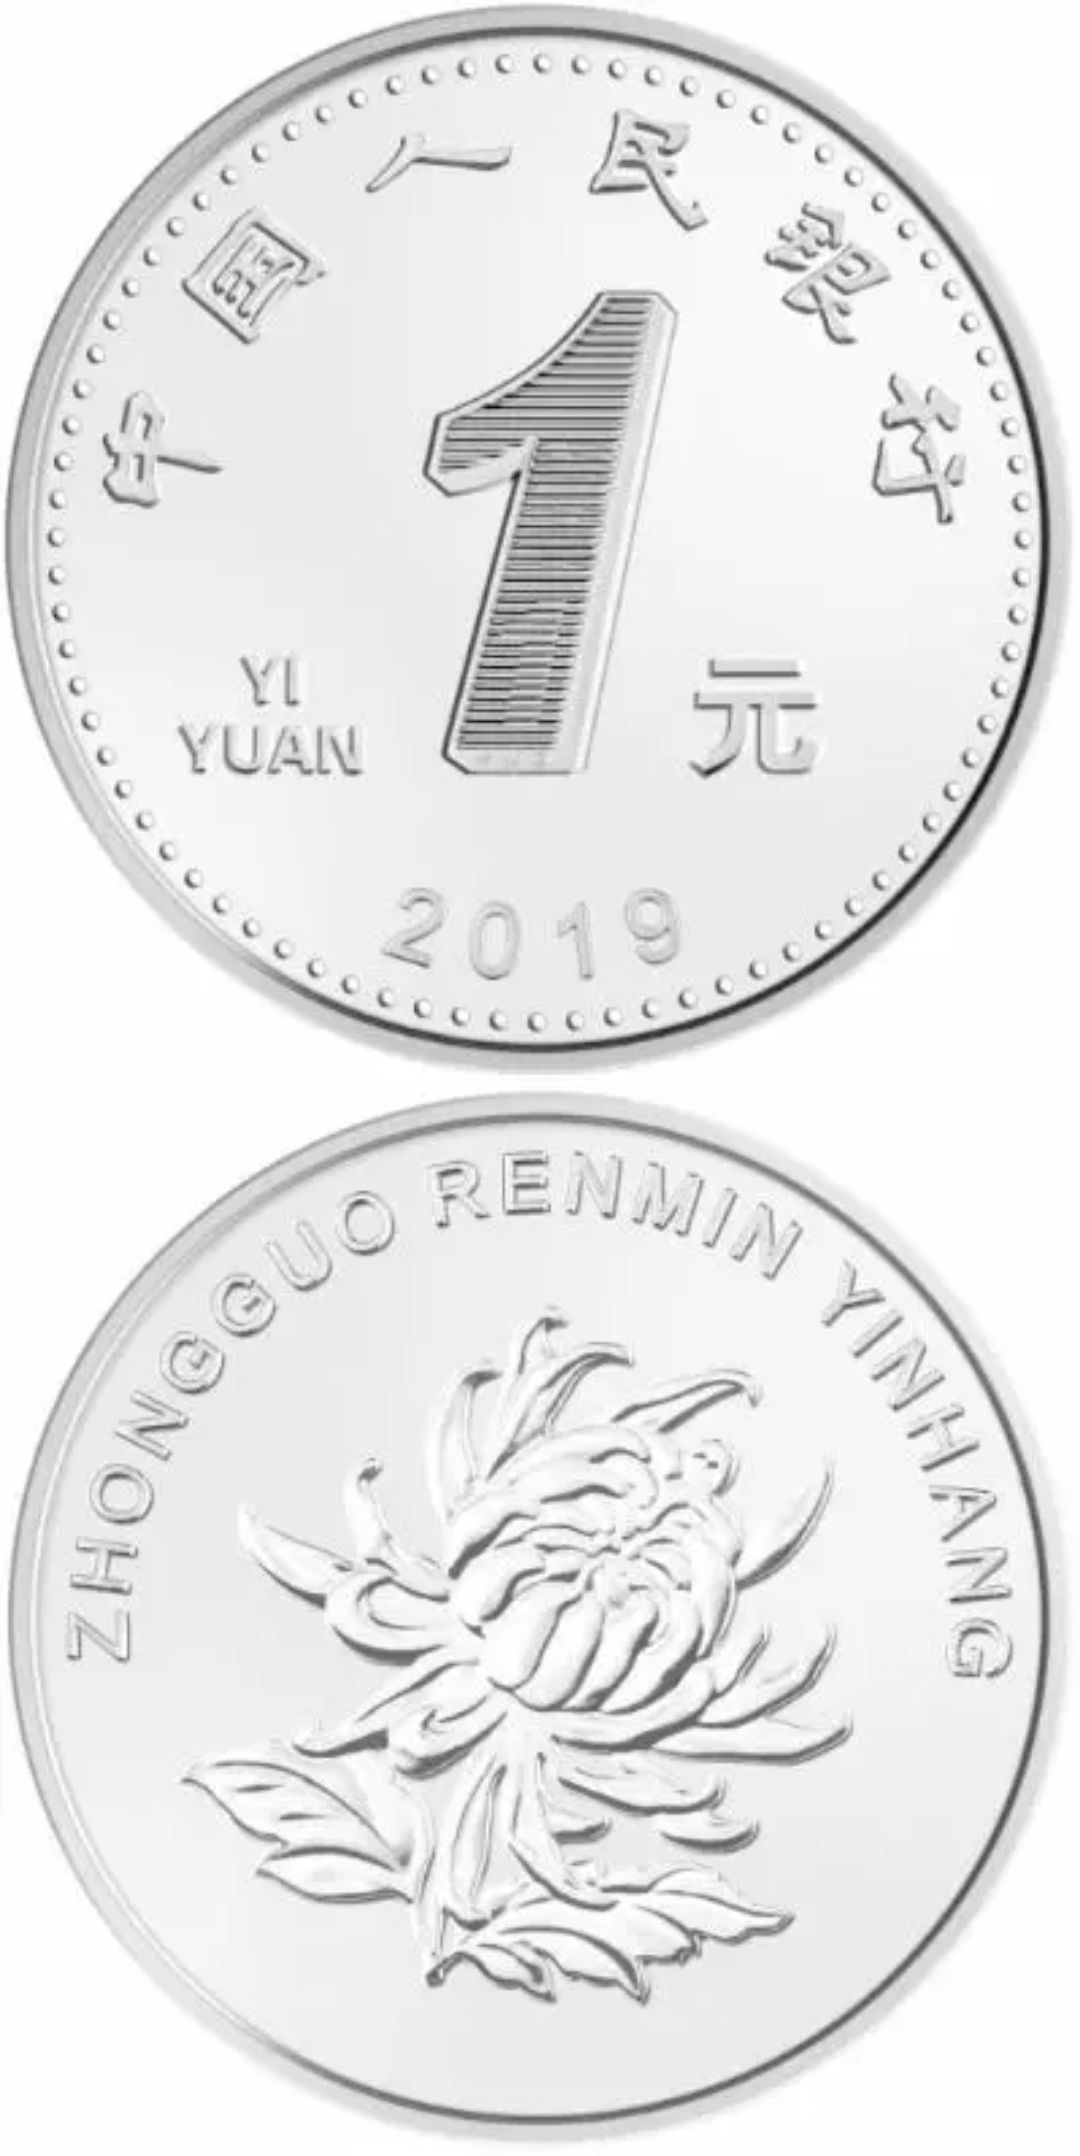 2019新版1元硬币尺寸[2019年新版1元硬币直径]